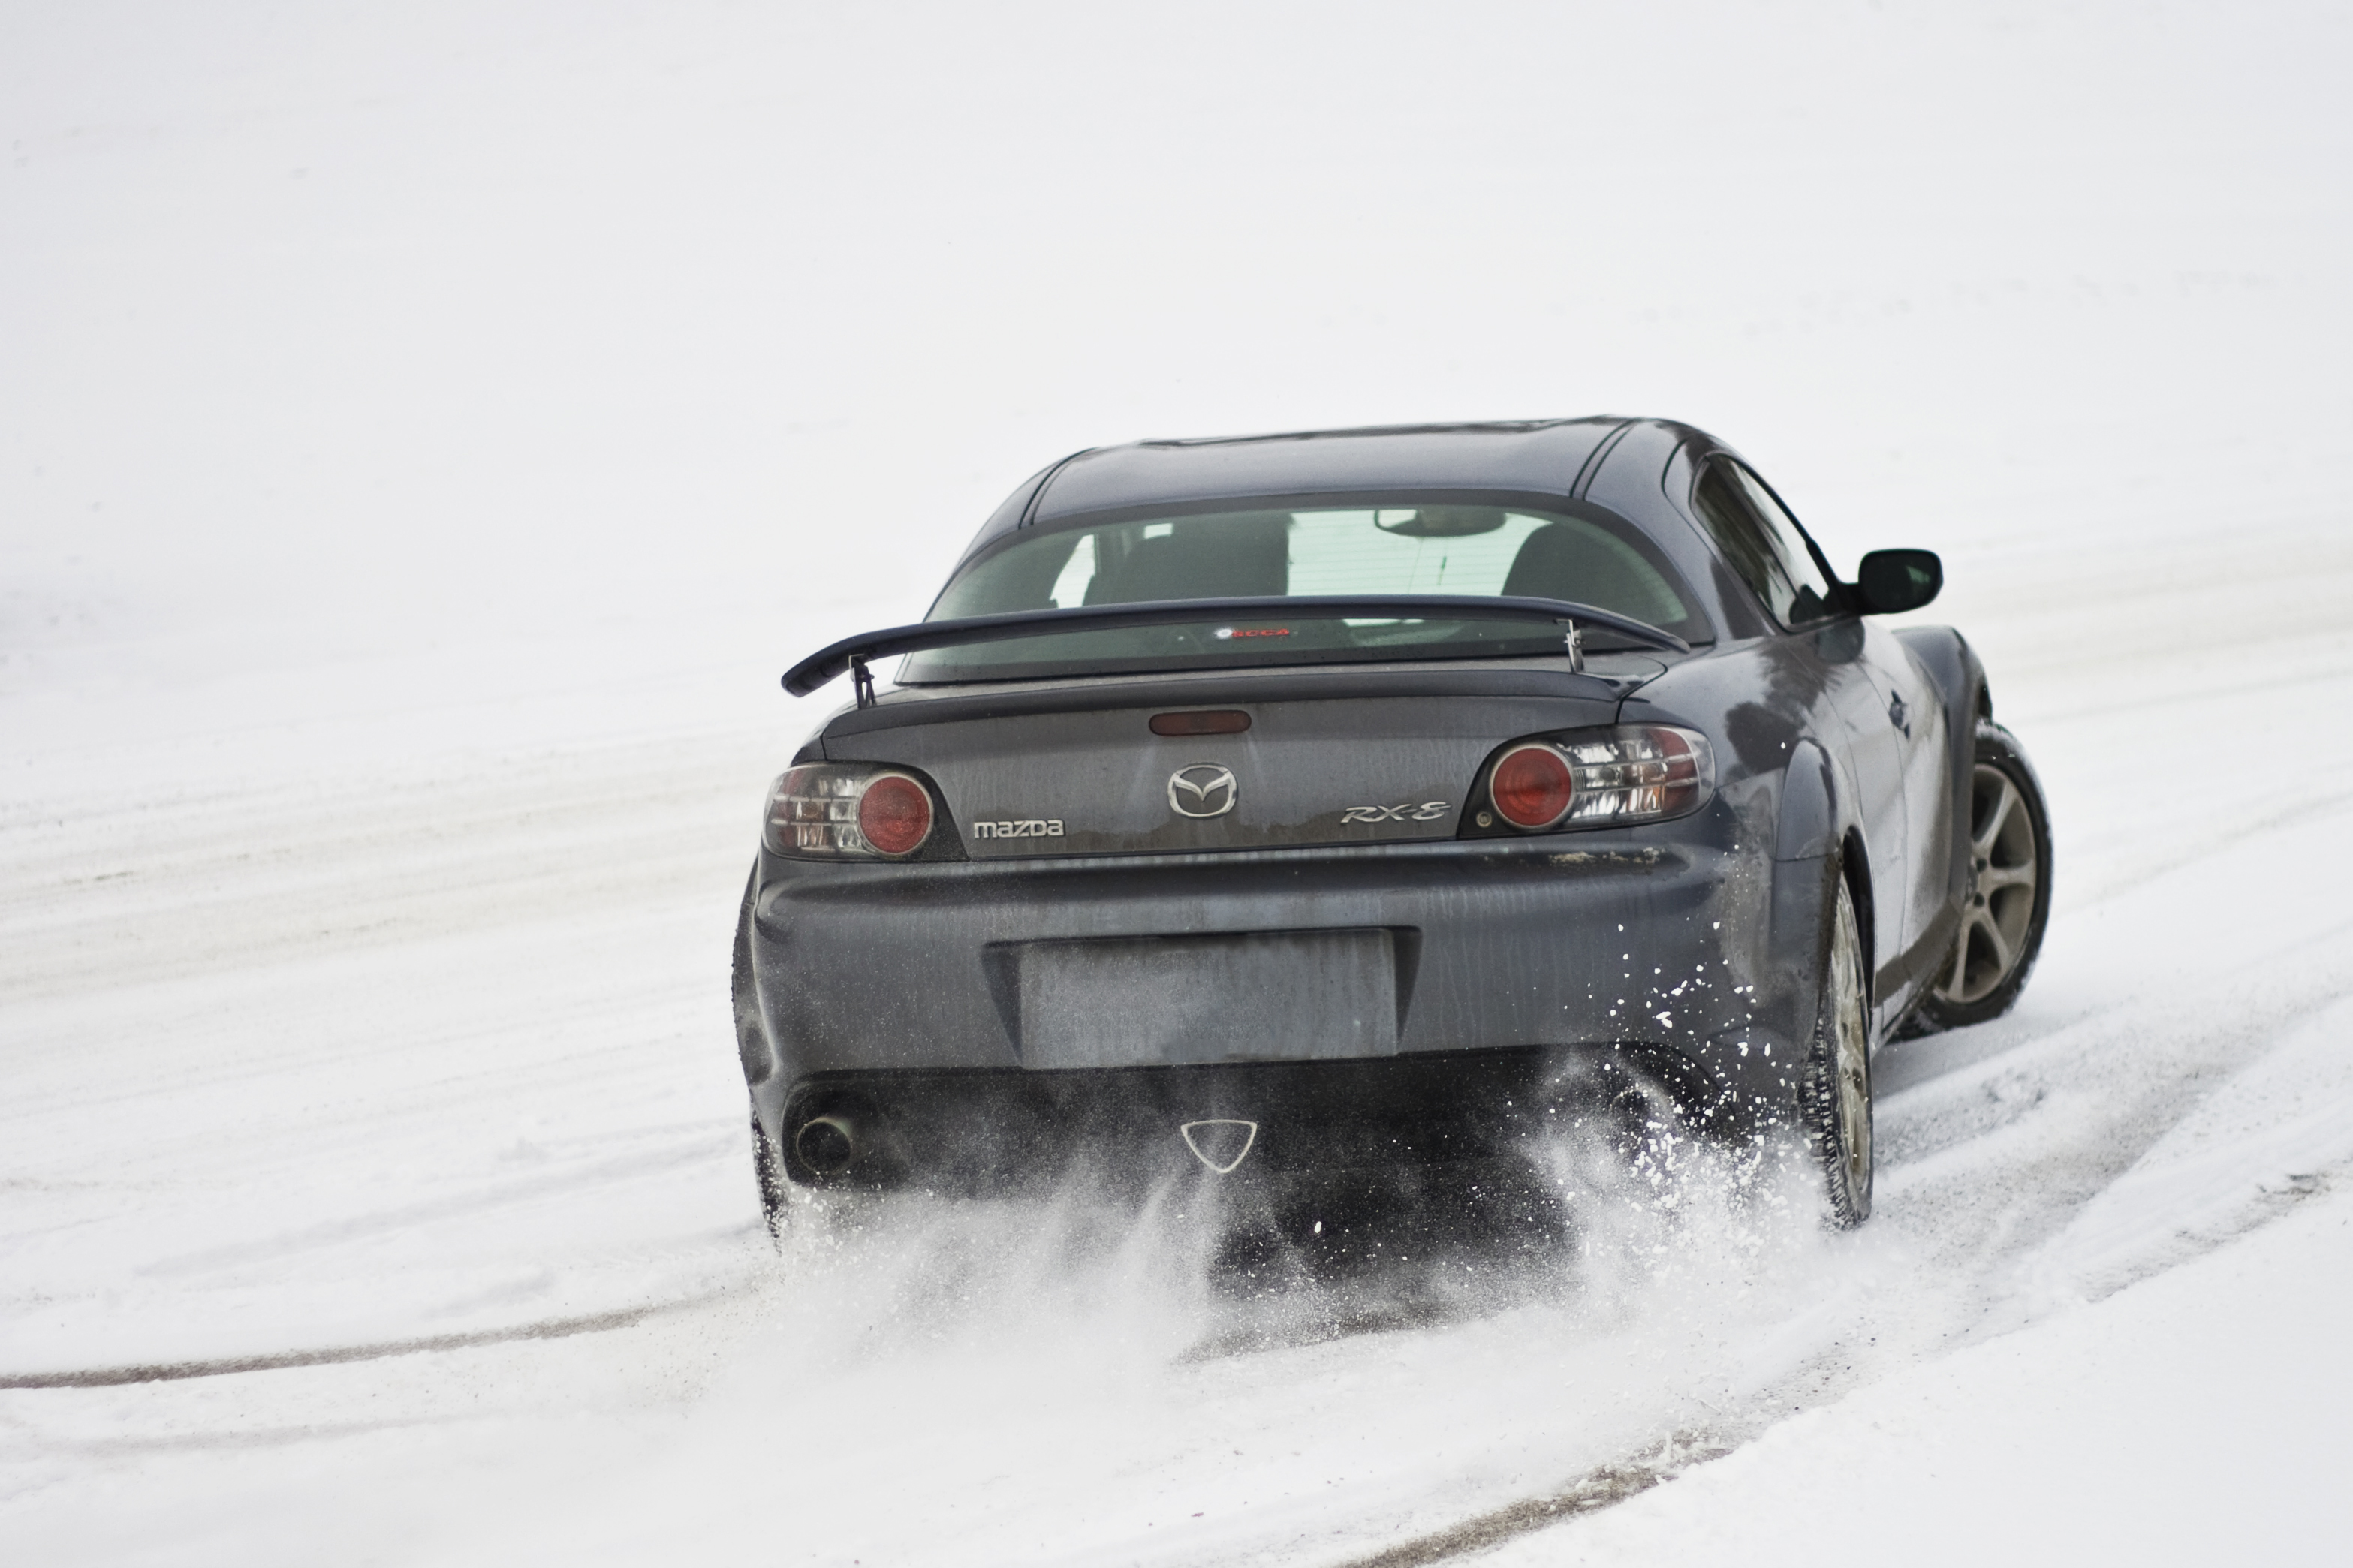 snow, cars, Mazda, vehicles, Mazda RX-8 - desktop wallpaper